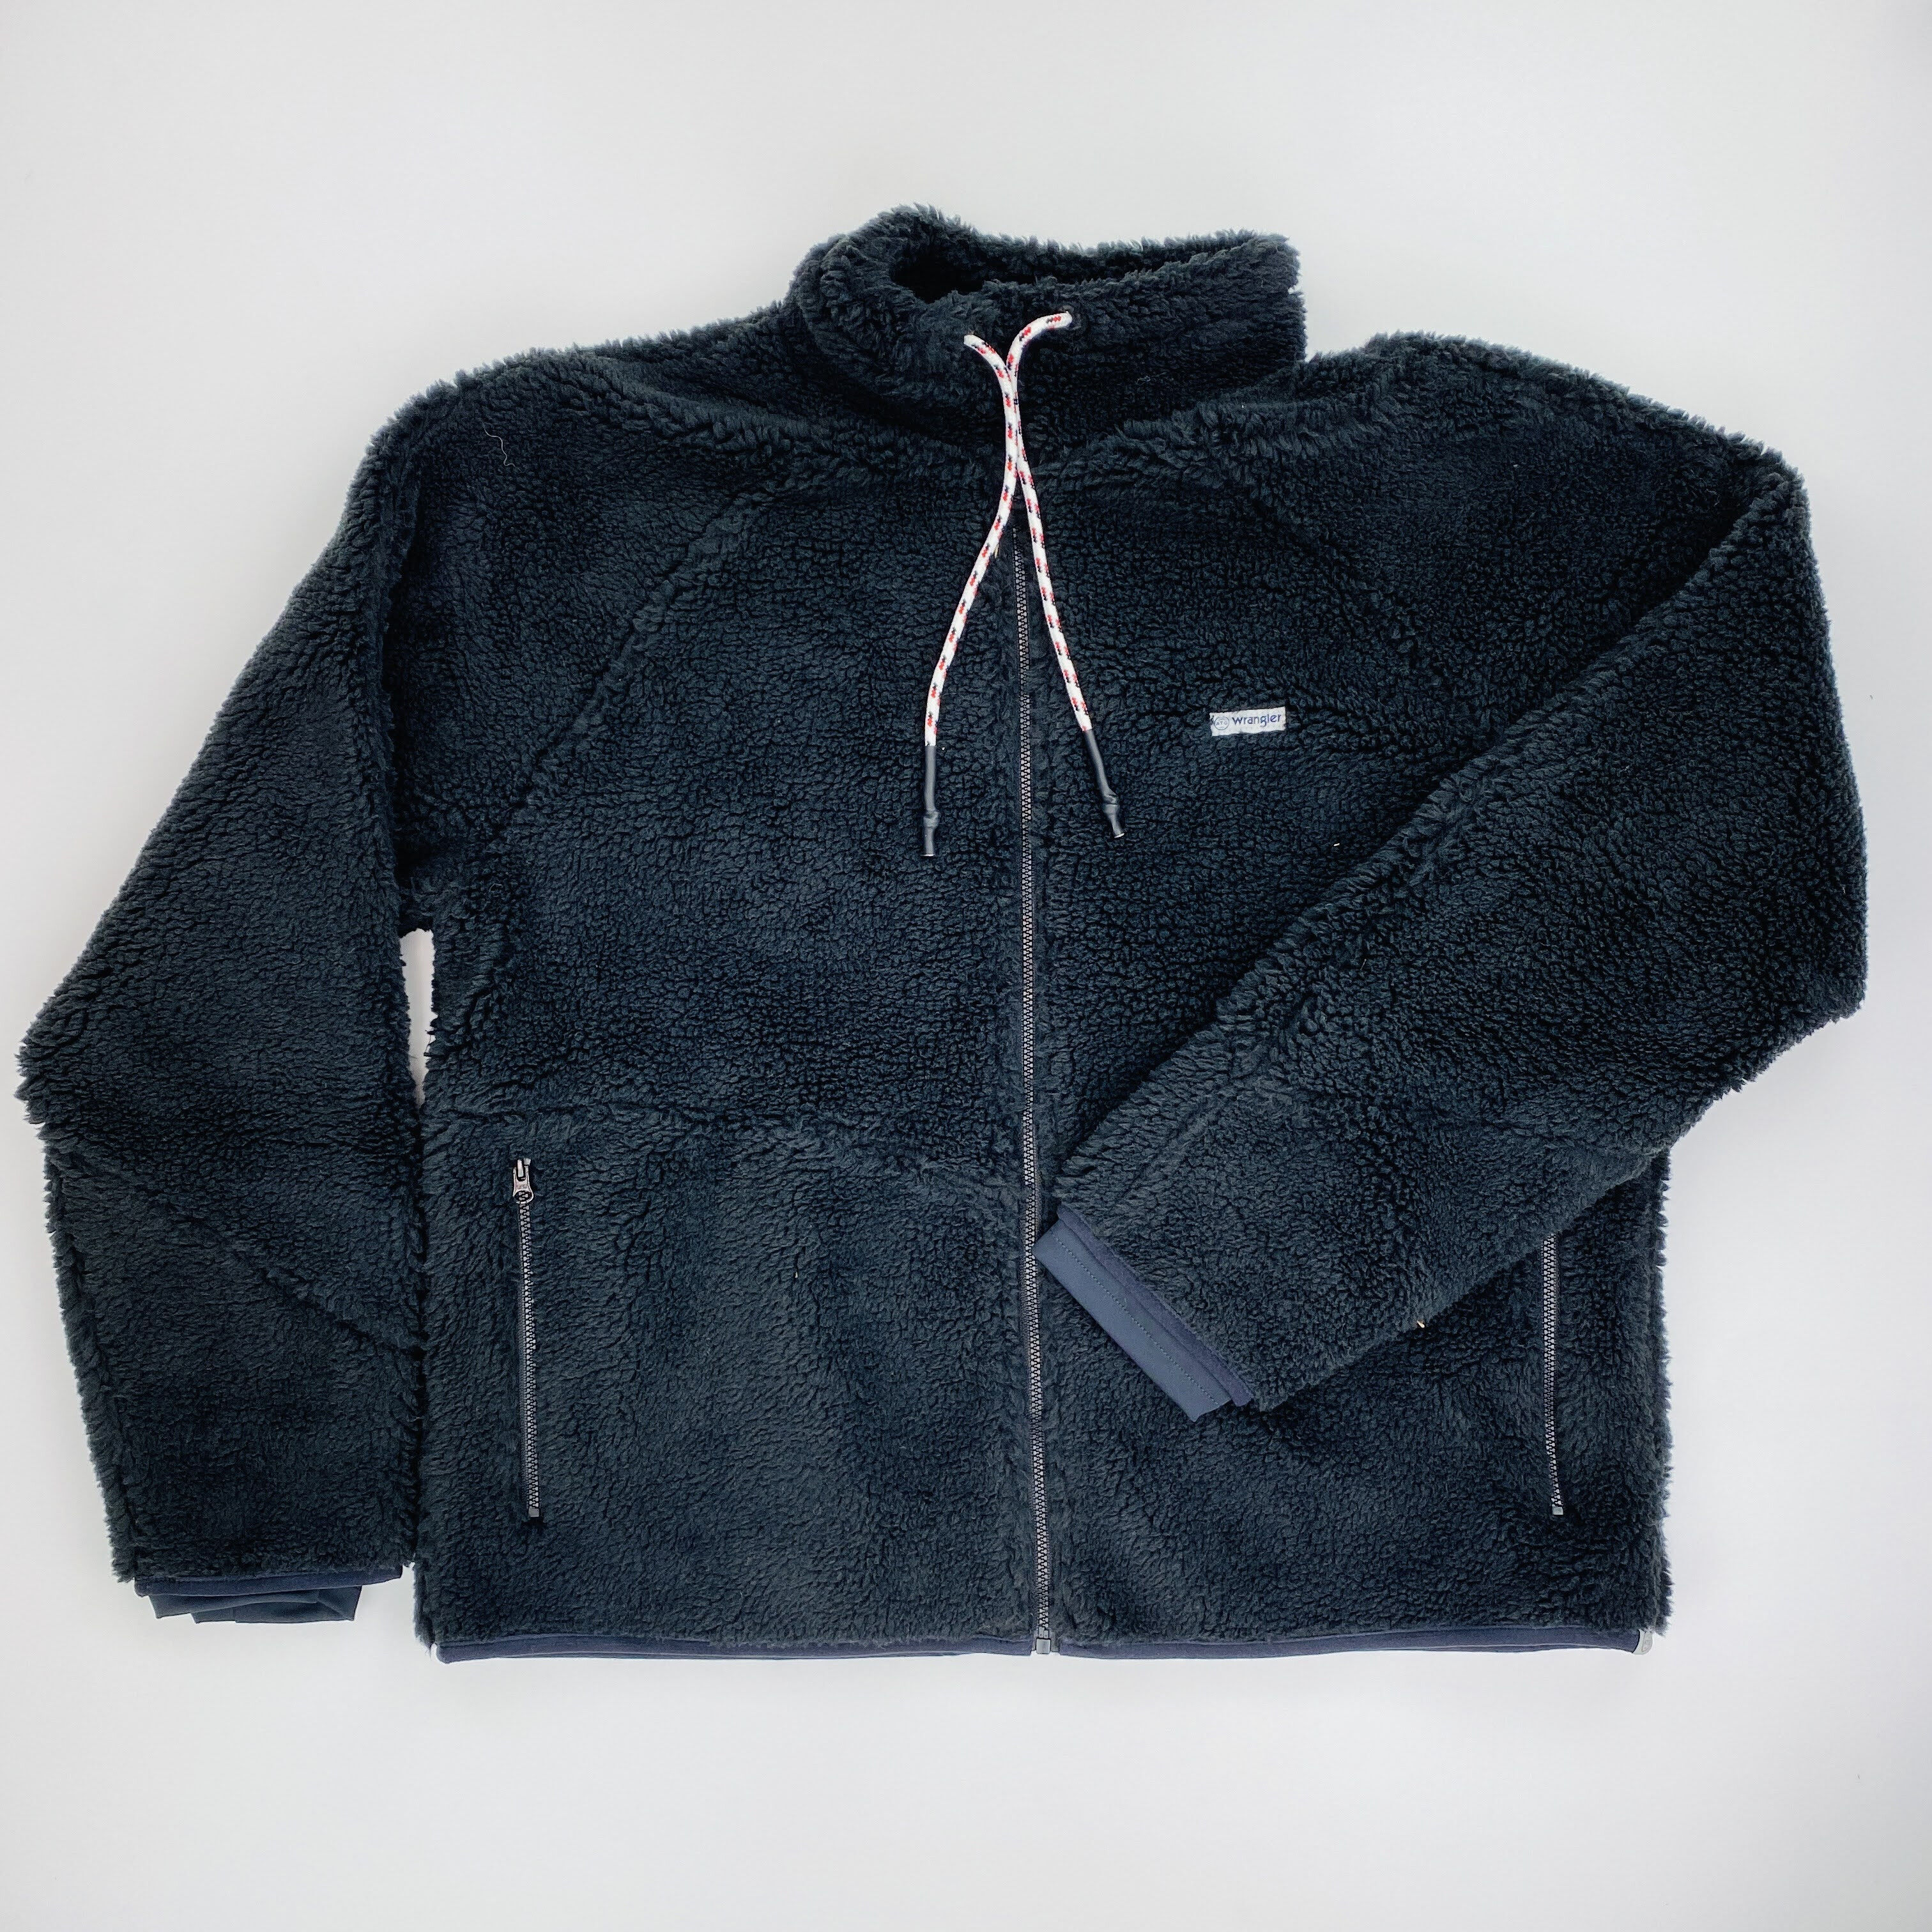 Wrangler Sherpa Fleece Jacket - Seconde main Sweatshirt femme - Noir - L | Hardloop